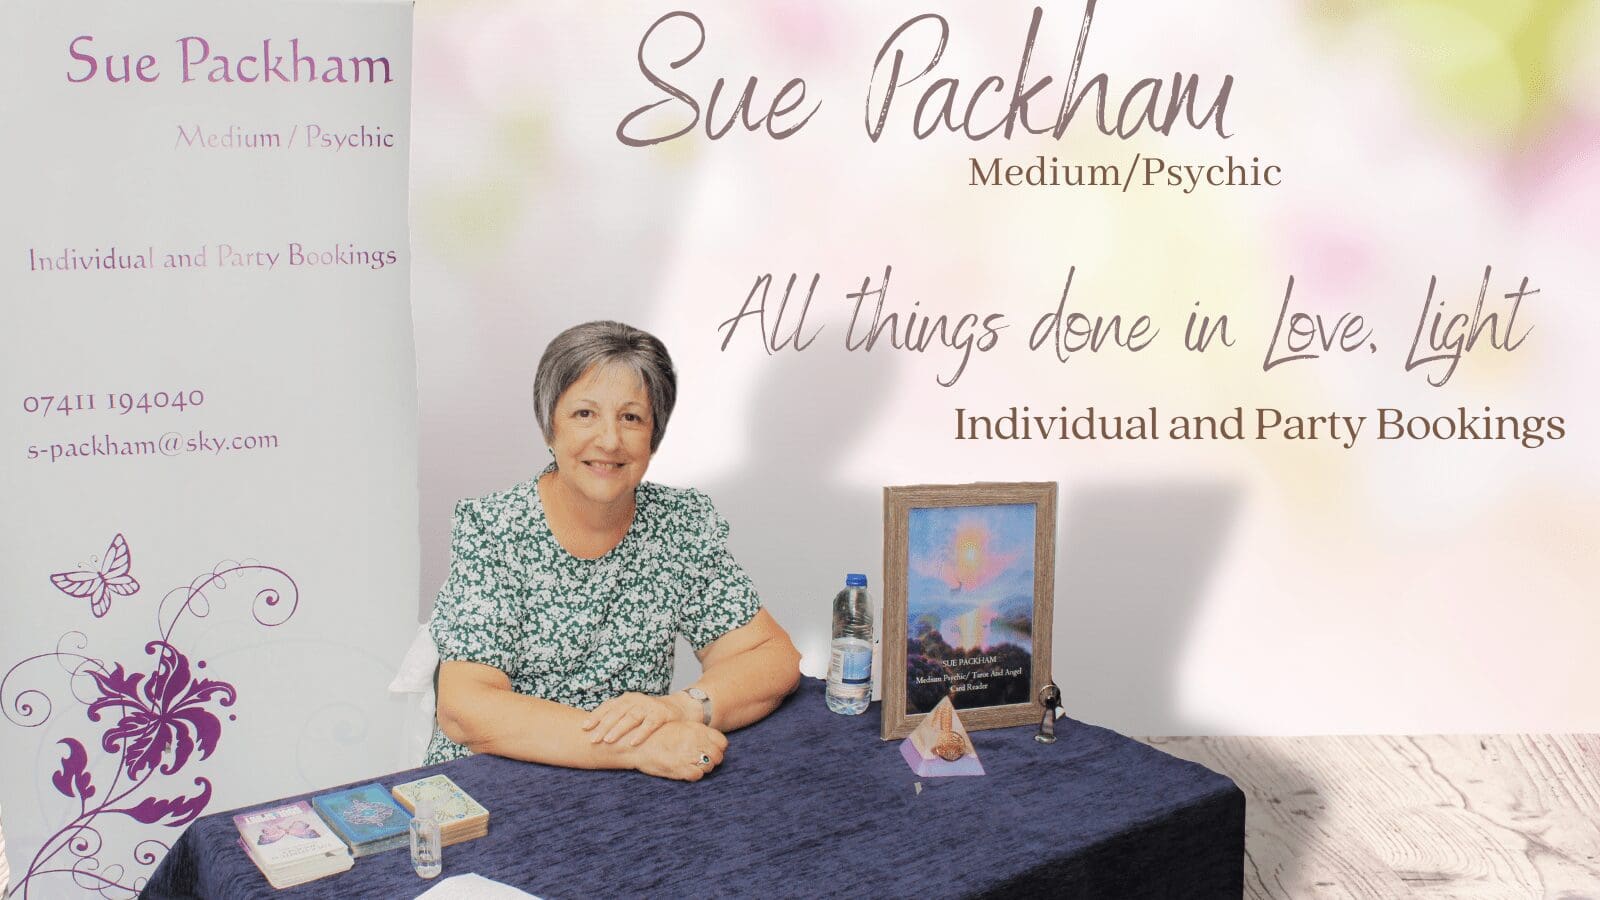 Sue Packham